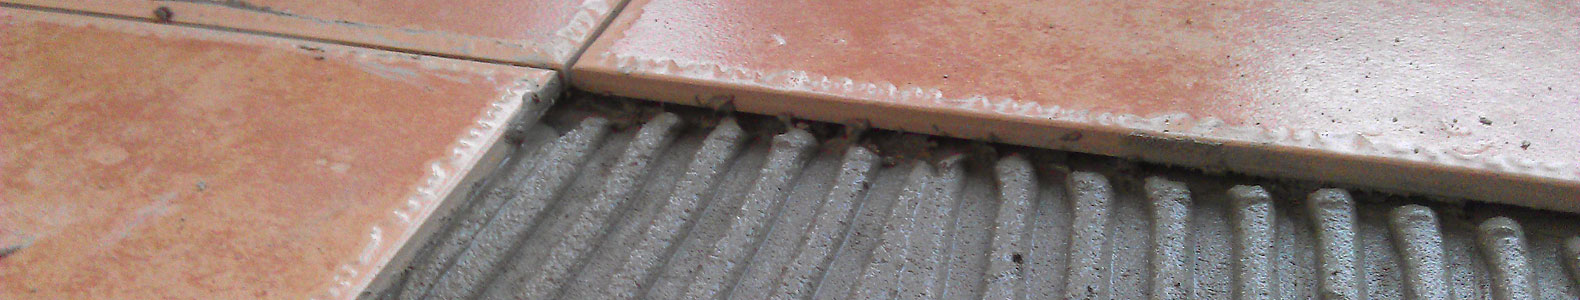 淀粉醚用于瓷砖粘贴砂浆-柏诺